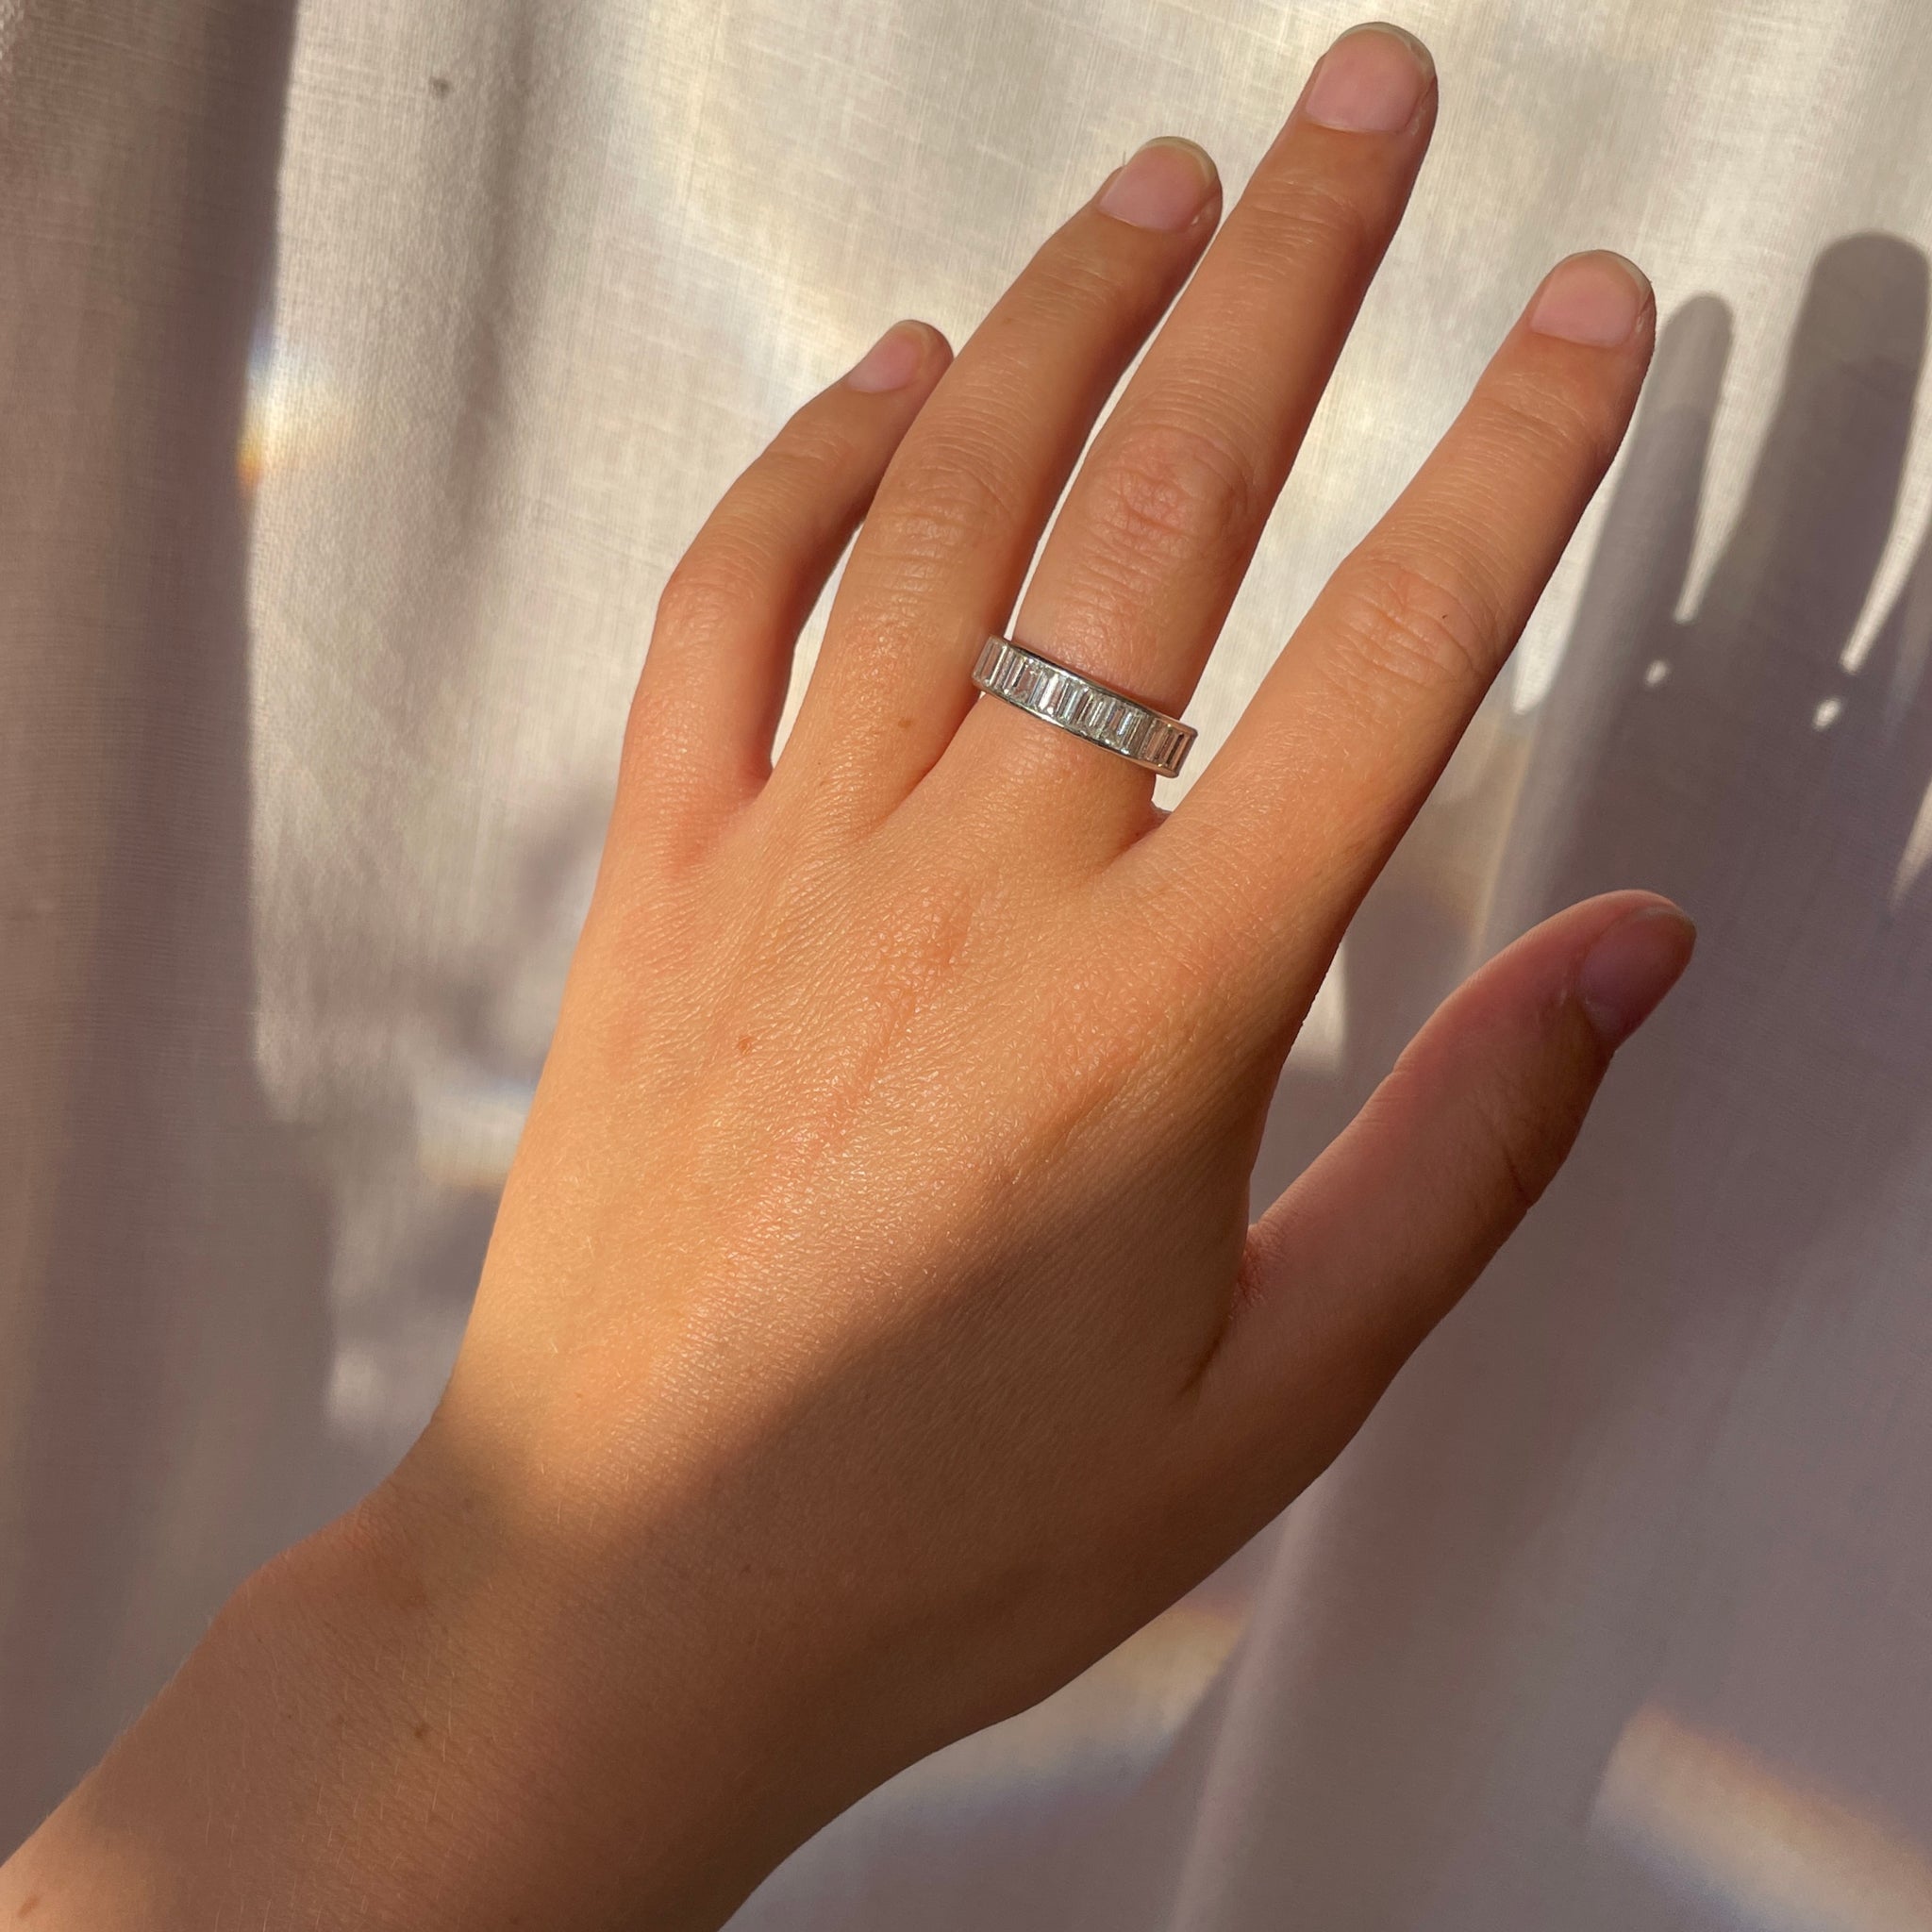 1960's Baguette Diamond Eternity Ring